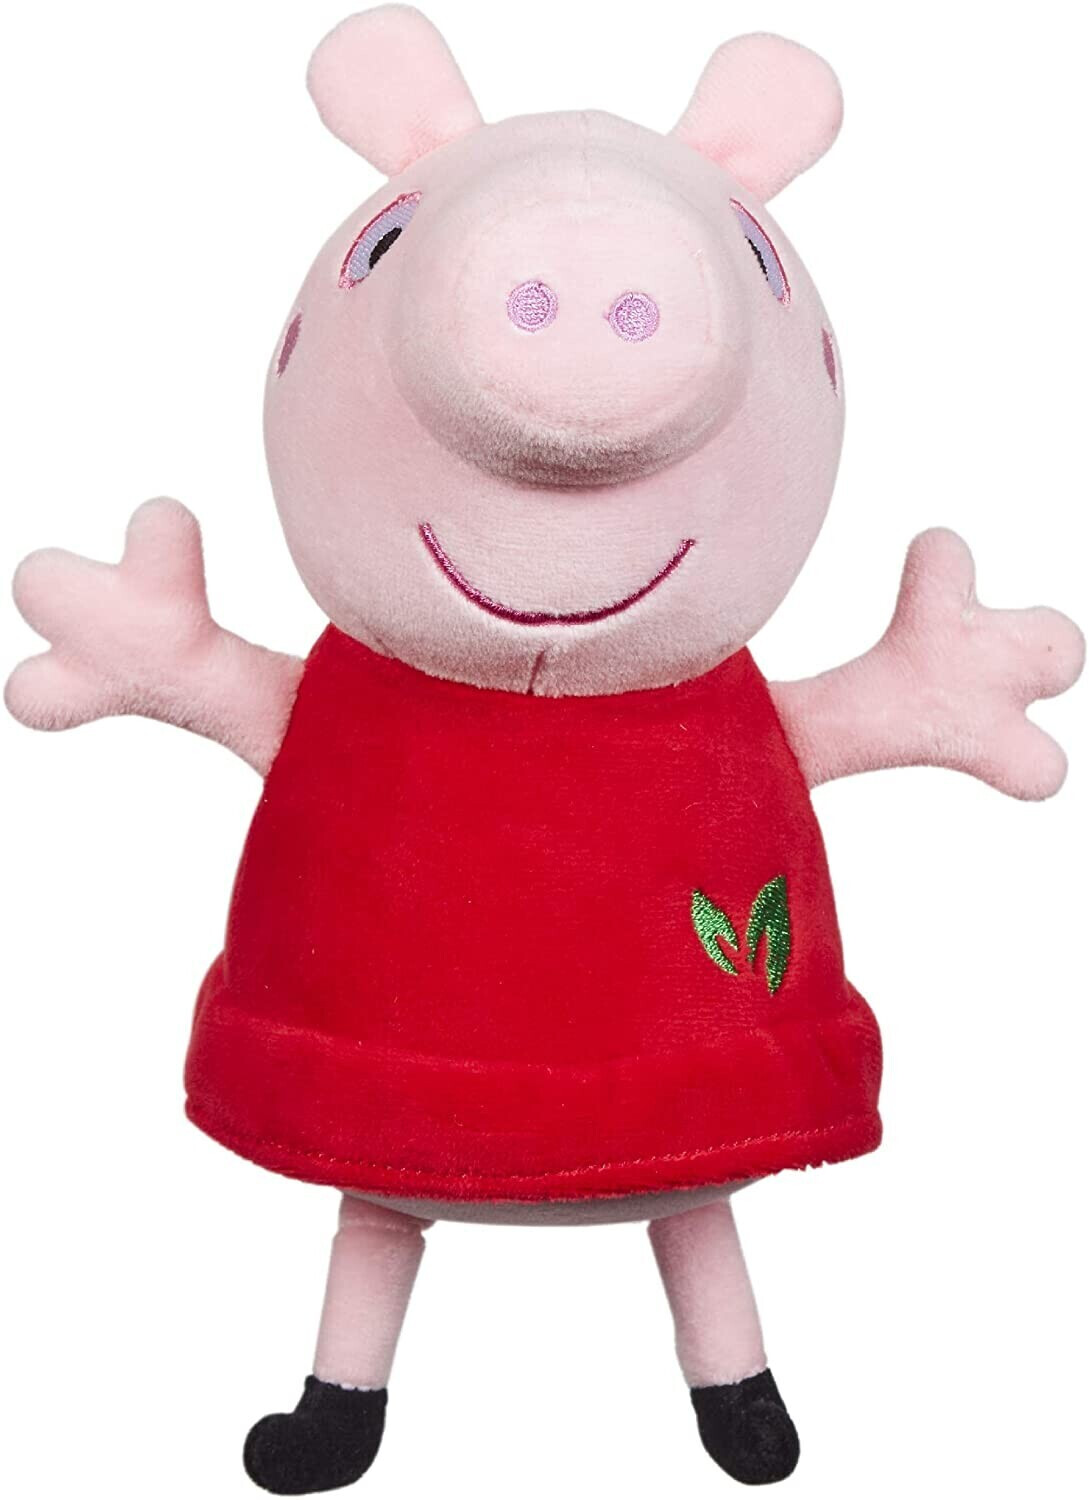 Photos - Soft Toy Peppa Pig  Pig Red Dress 